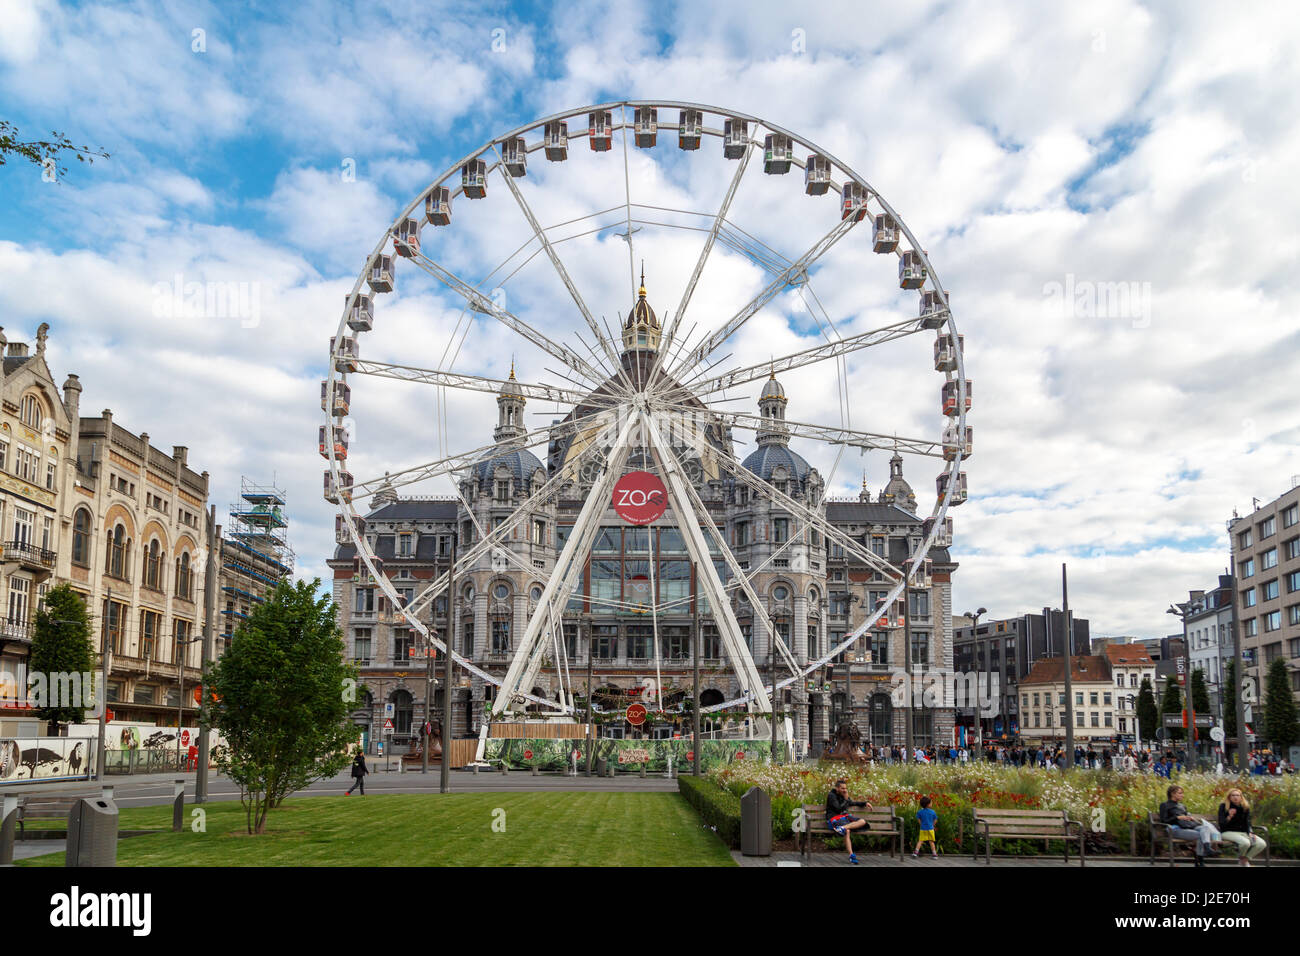 Anvers, Belgique - le 5 juillet 2016 : vue extérieure de la Gare Centrale d'Anvers avec grande roue. Anvers est la capitale de la région o Banque D'Images